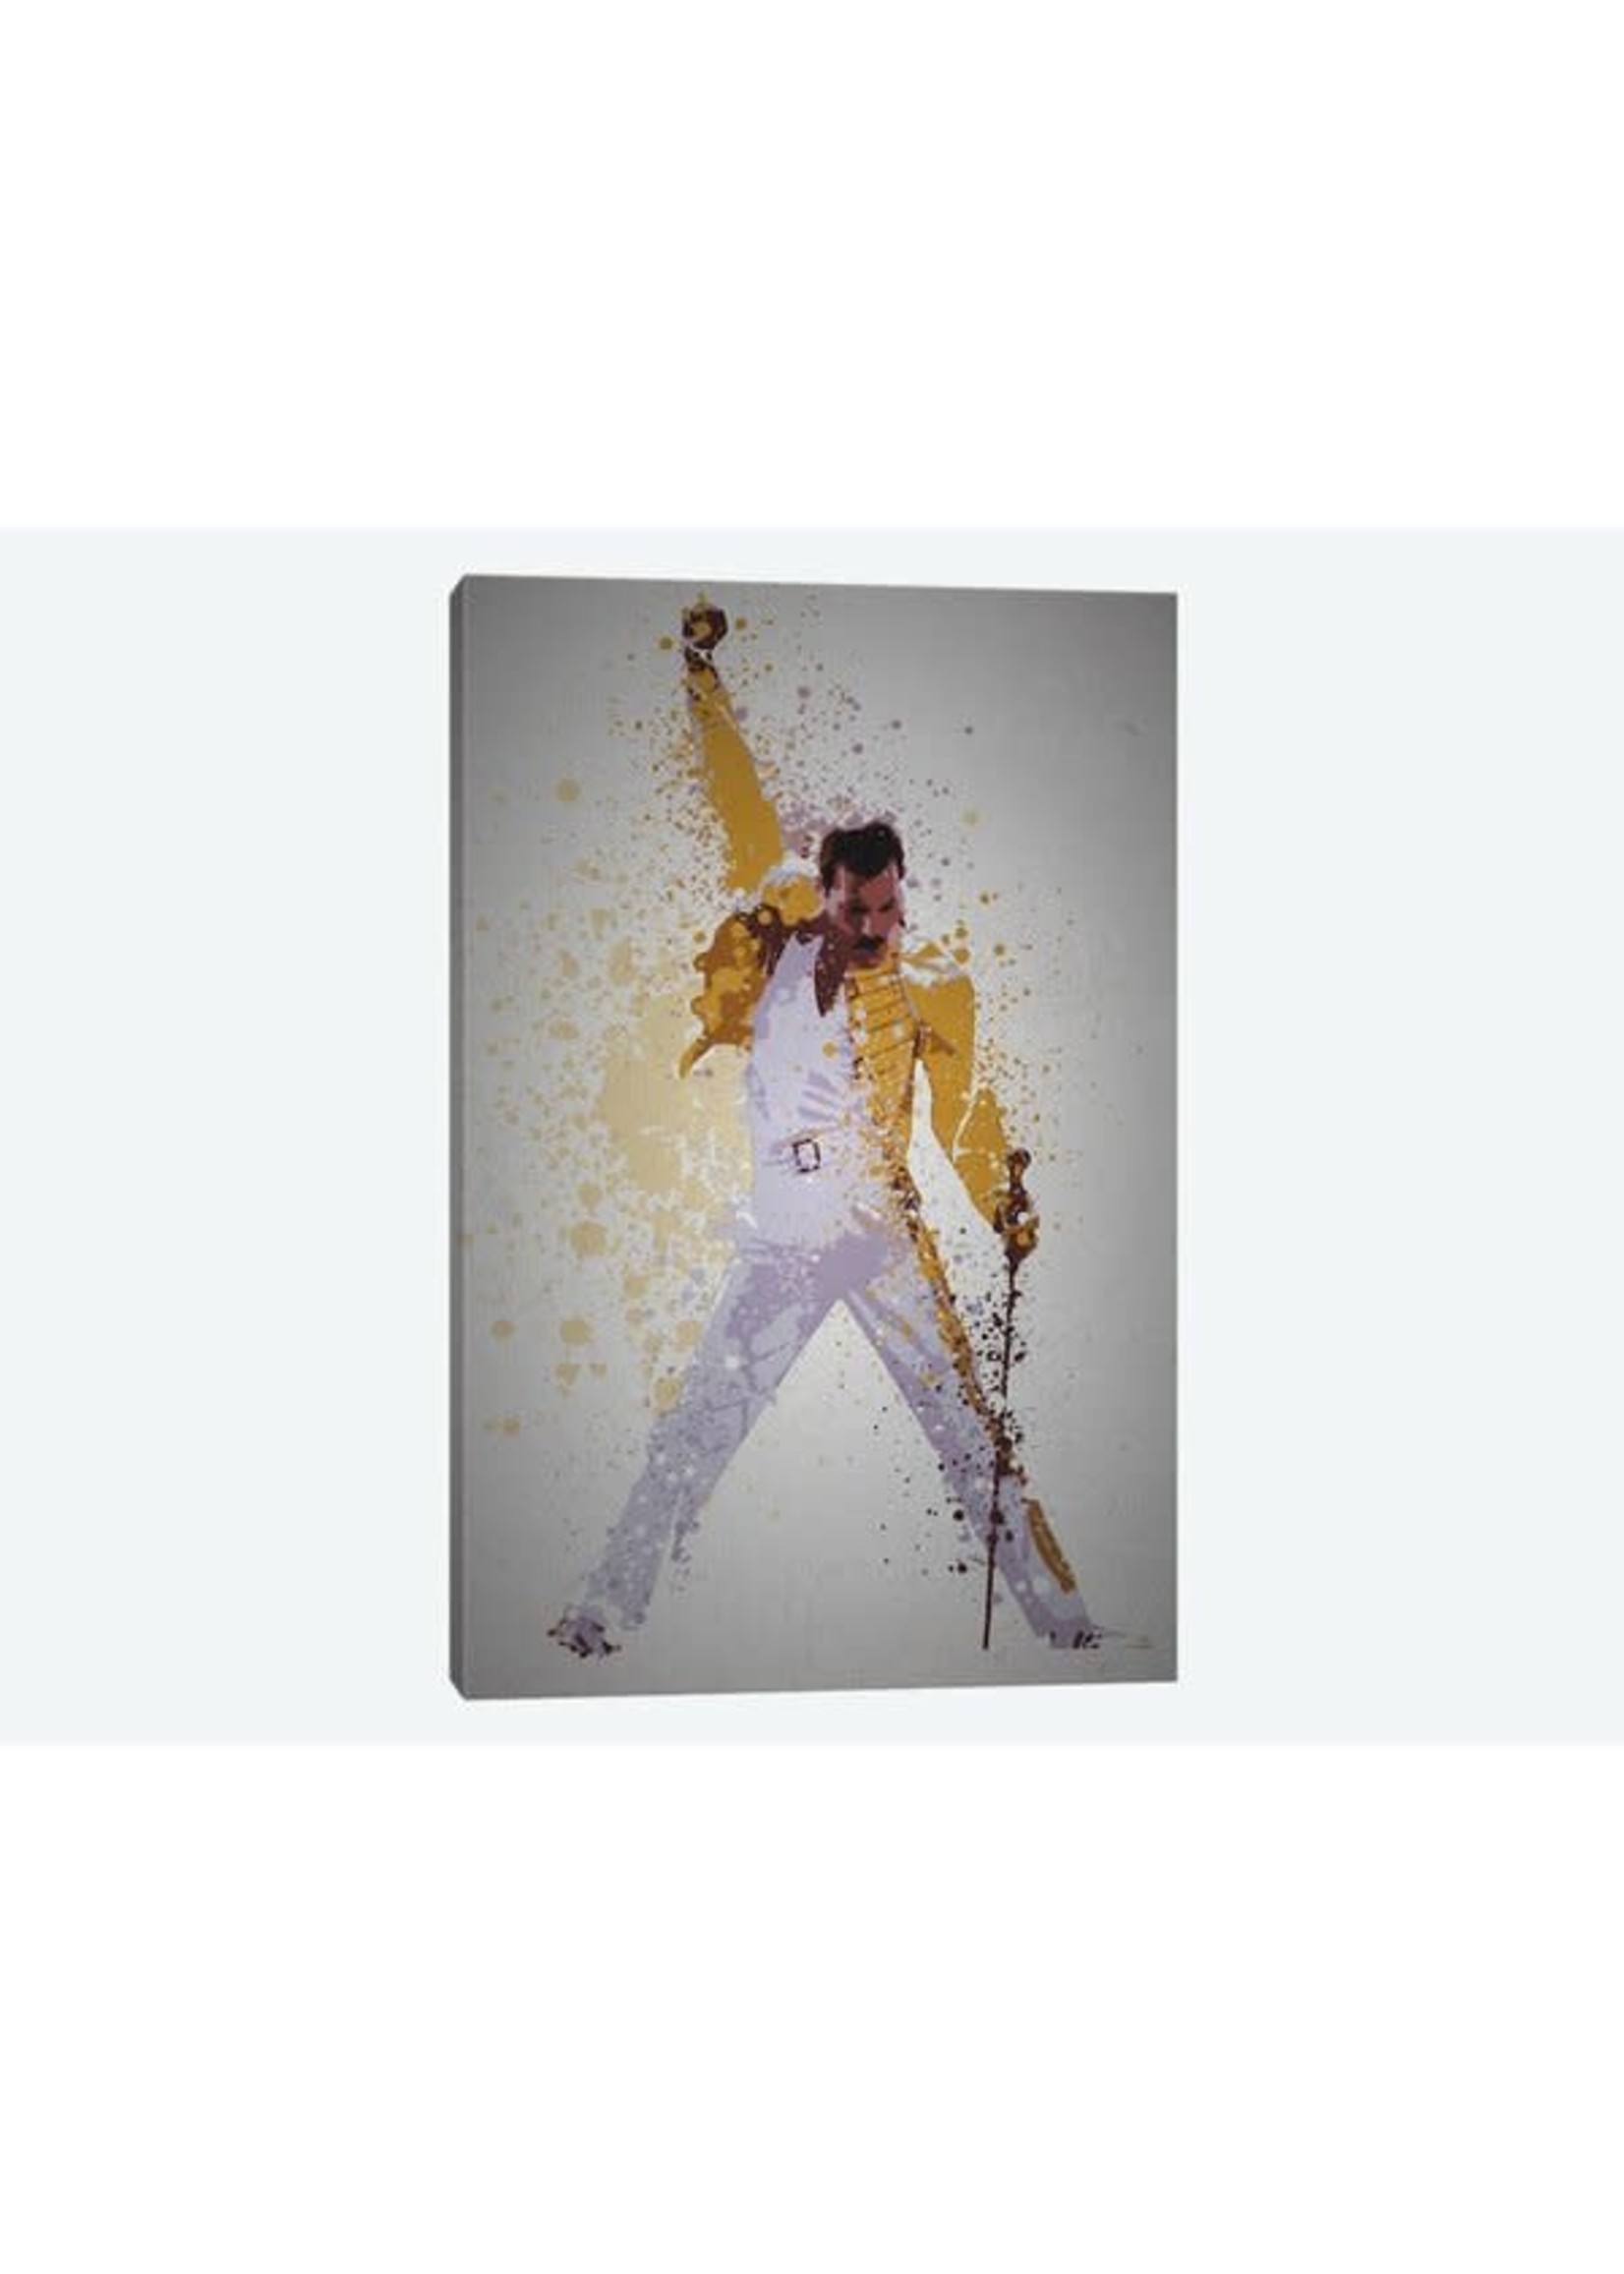 *40" x 60" Freddie Mercury' Graphic Art Print on Canvas - Minor Blemishes Around Edges